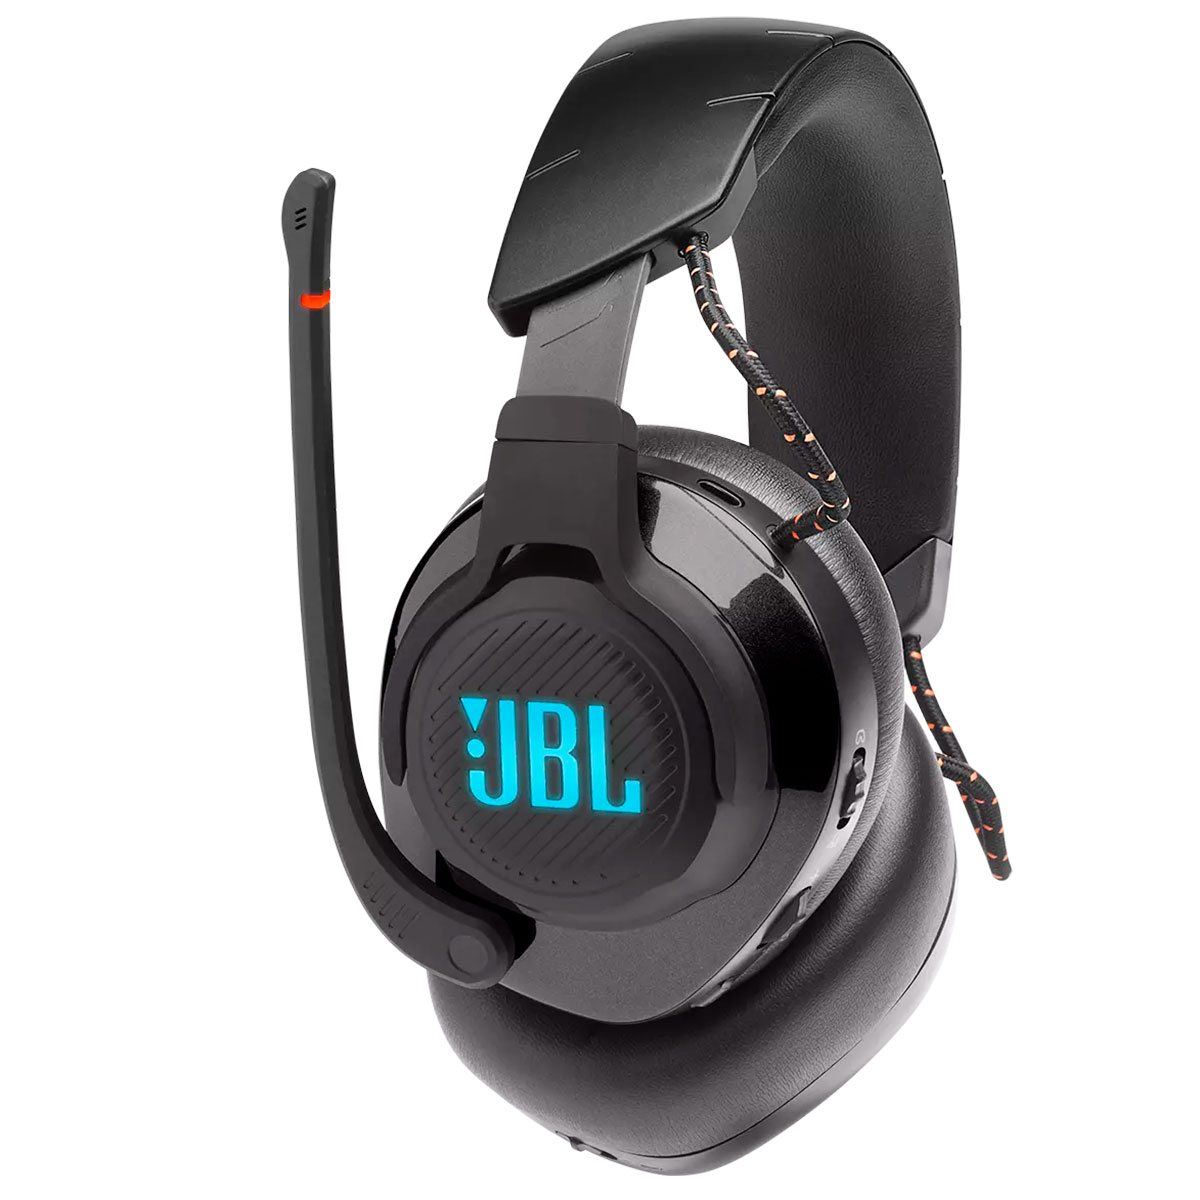 Headset Gamer Sem Fio JBL Quantum 600 - Conexão 2.4GHz - Over Ear - DTS - JBLQUANTUM600BLK